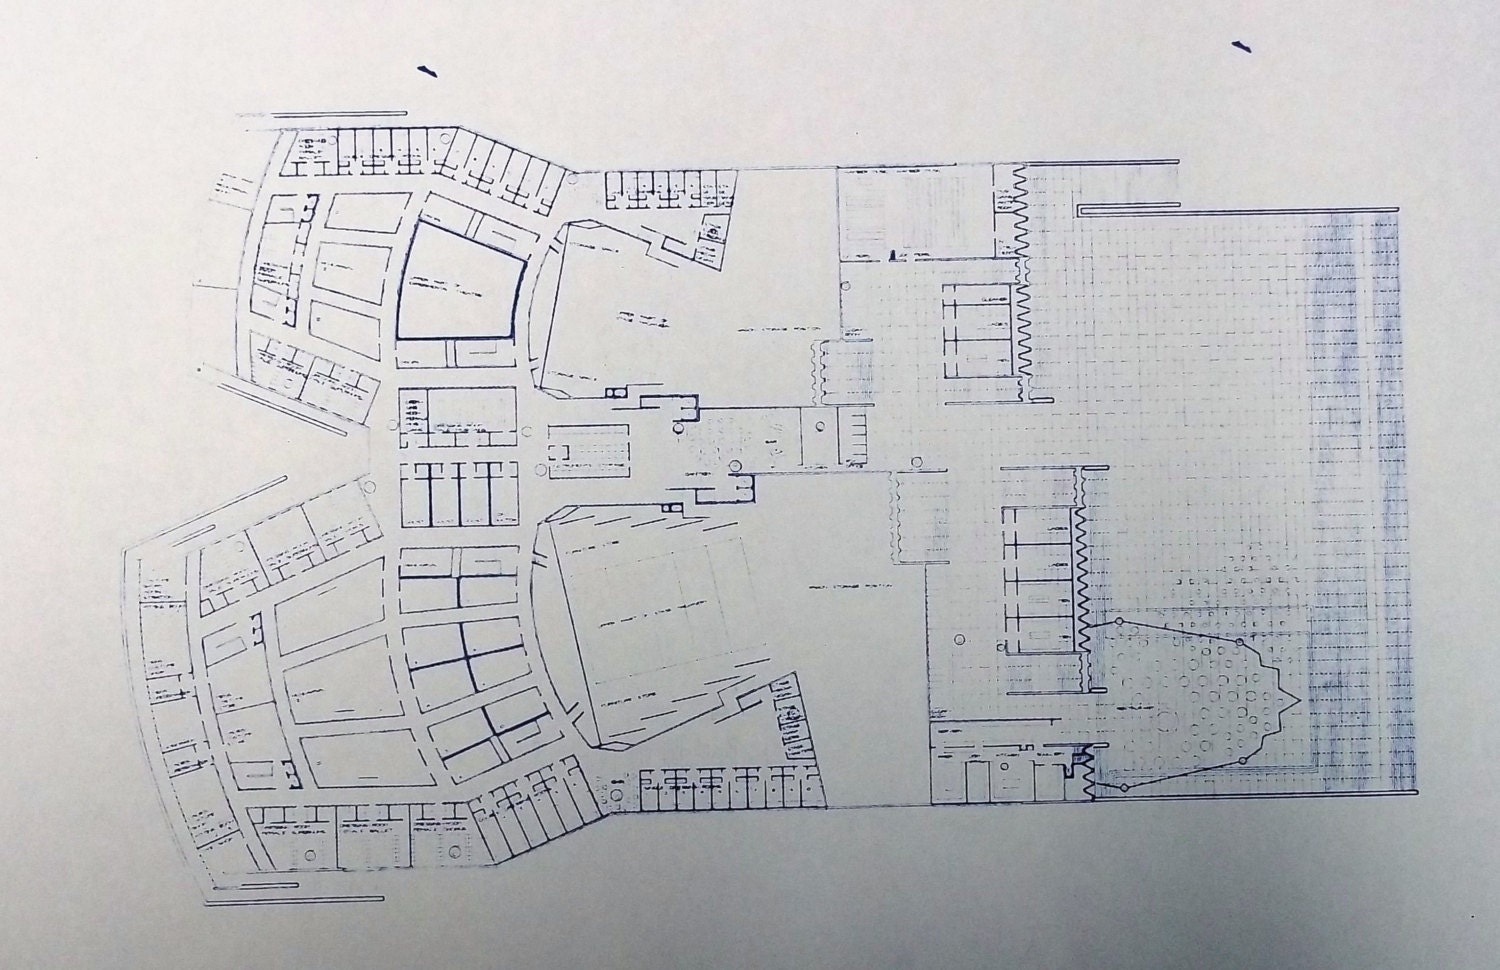 Sydney Opera House Floor Plan Blueprint by BlueprintPlace on Etsy